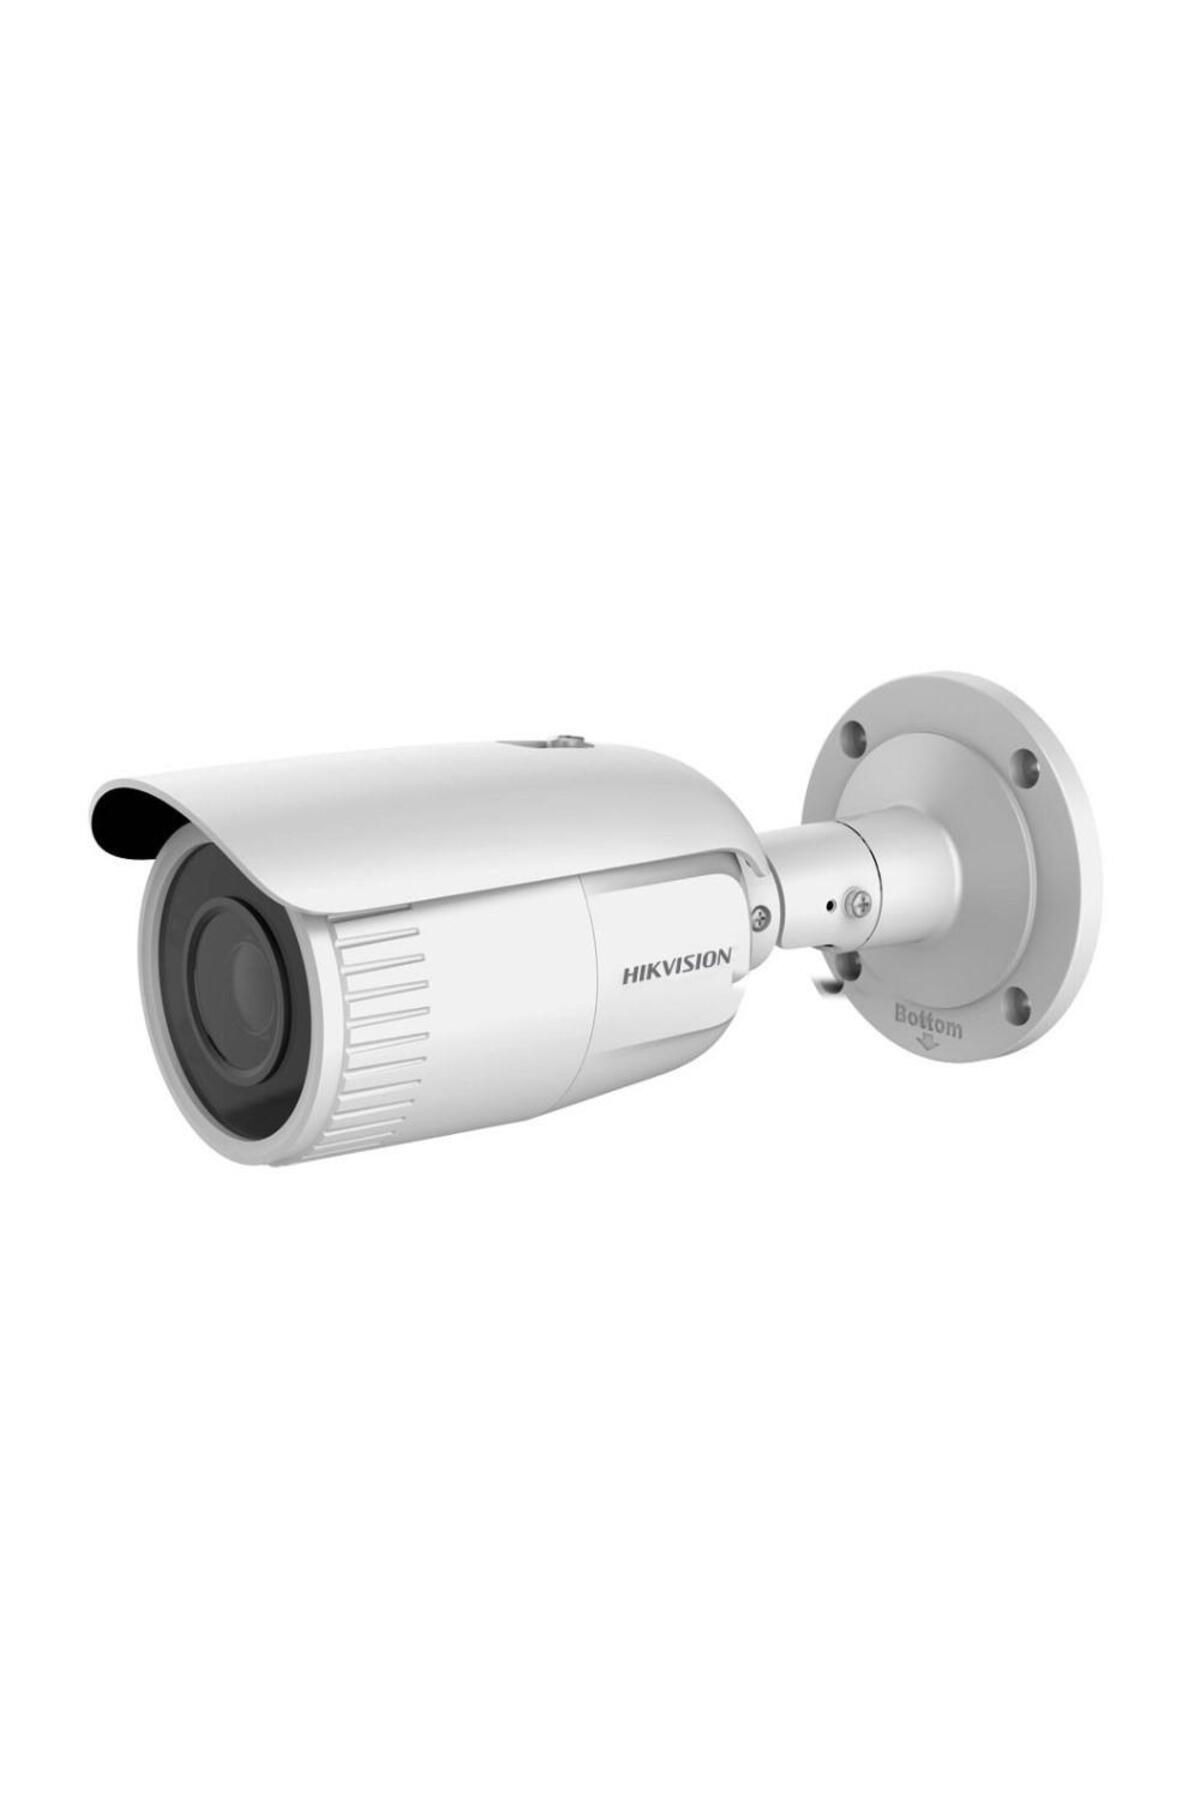 Hikvision Ds-2cd1643g0-ızs/uk 4mp 2.7-13,5m Motorize 60mt Kamera